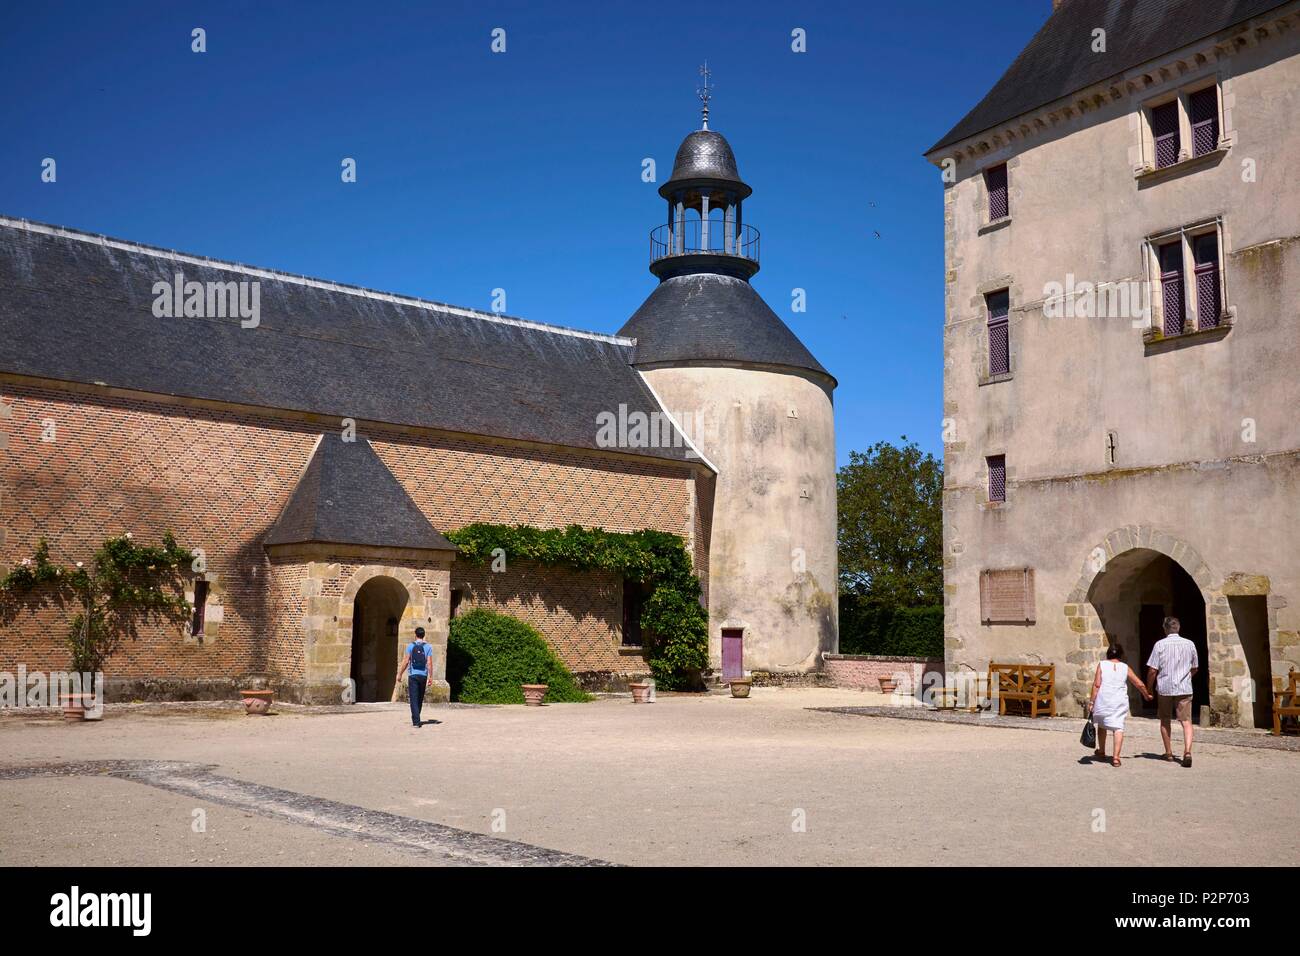 France, Loiret, Chilleurs aux Bois, Inner courtyard of Chamerolles castle, Mandatory mention : Chateau de Chamerolles, property of Loiret department Stock Photo